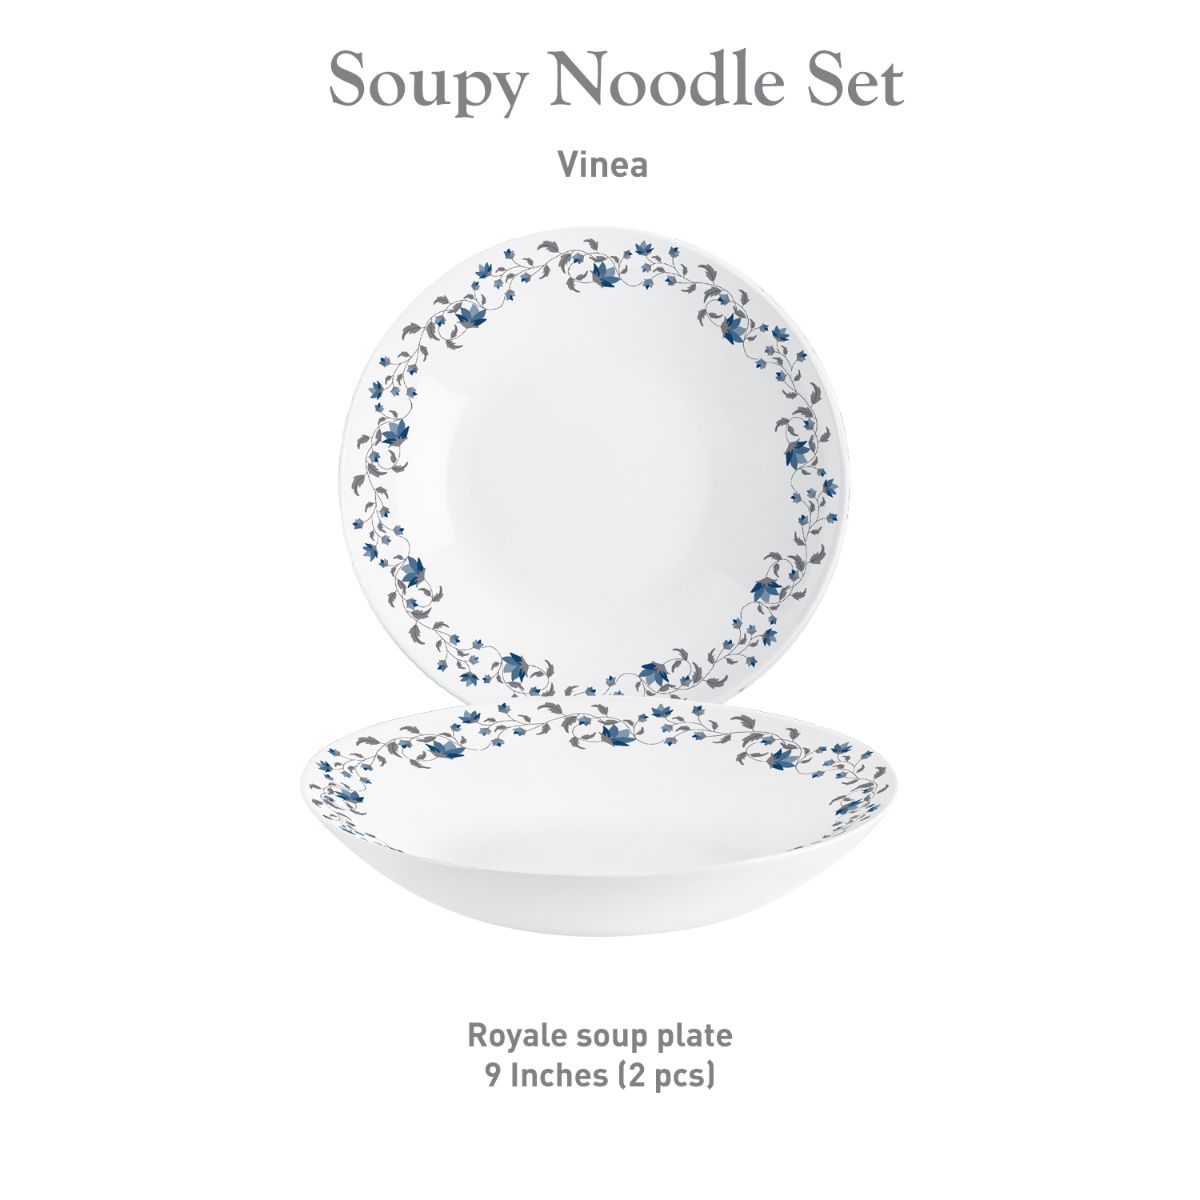 Royale Series Soupy Noodle Gift Set, 2 Pieces Vinea / 2 Pieces